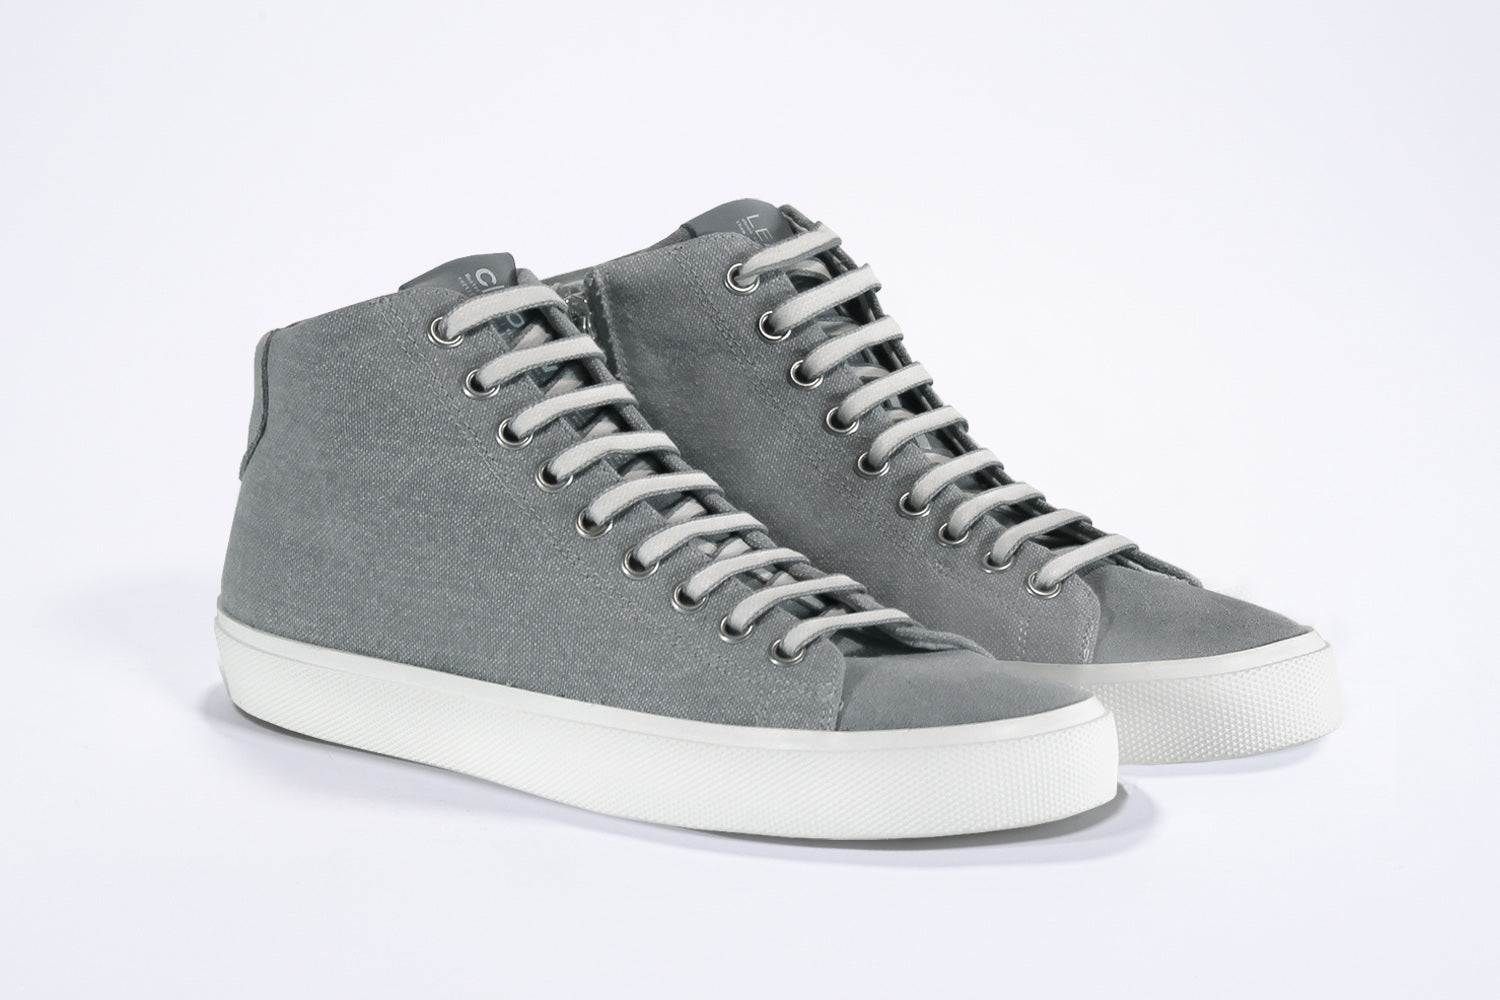 Vue de trois quarts de l'avant de la chaussure de sport sneaker avec une tige en toile grise, une fermeture éclair interne et une semelle blanche.